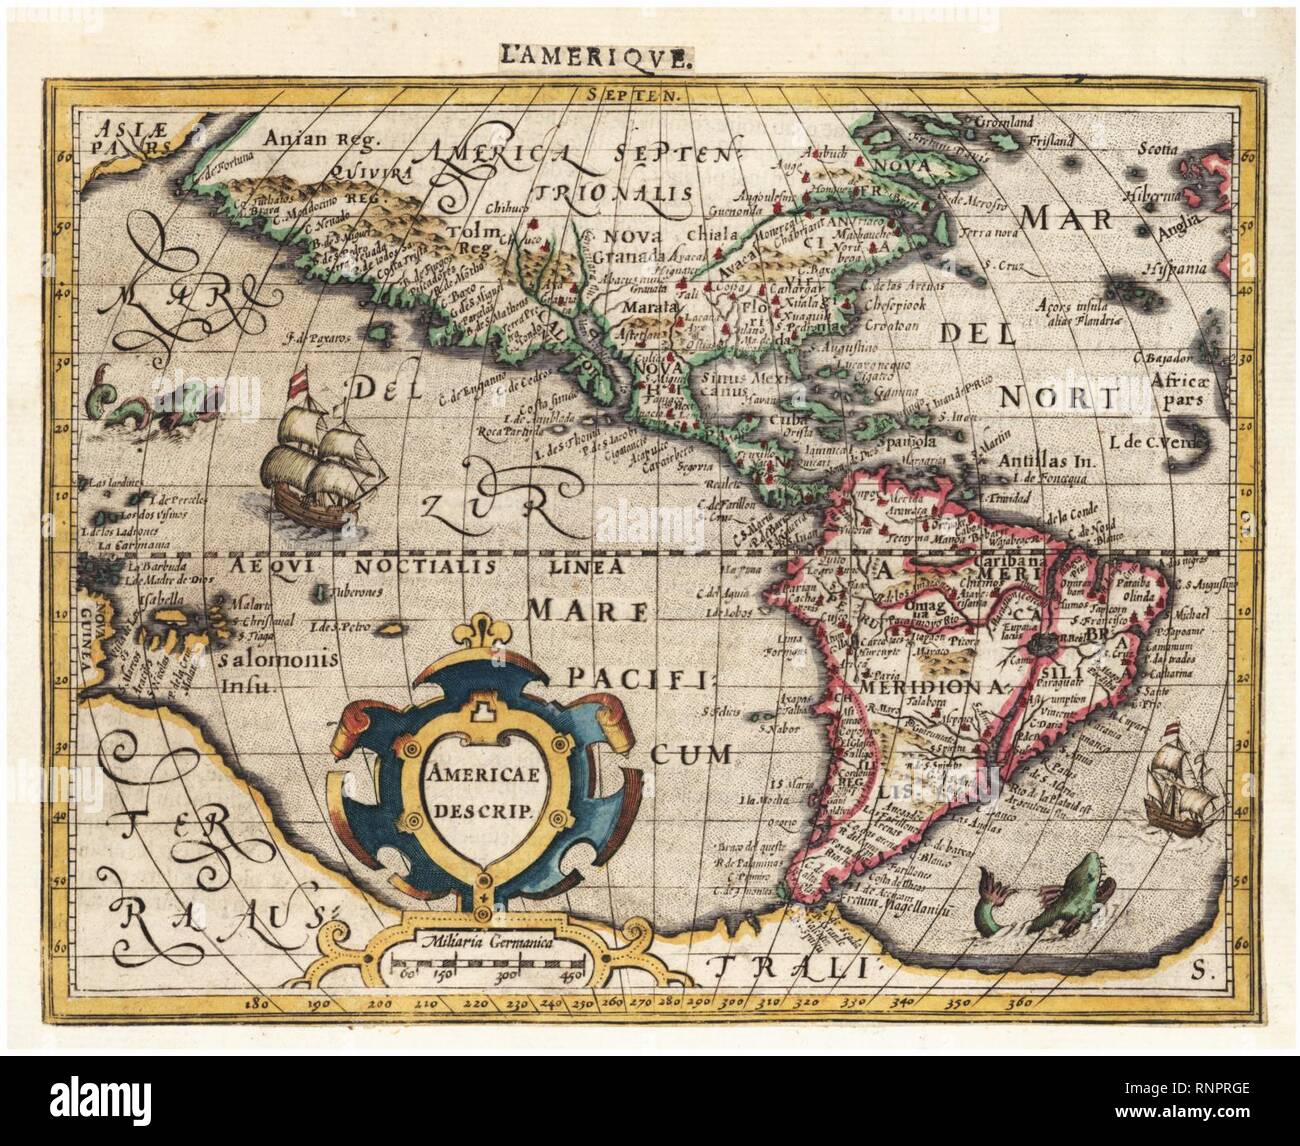 carte de amerique Carte De L Amerique De 1700 Stock Photo Alamy carte de amerique